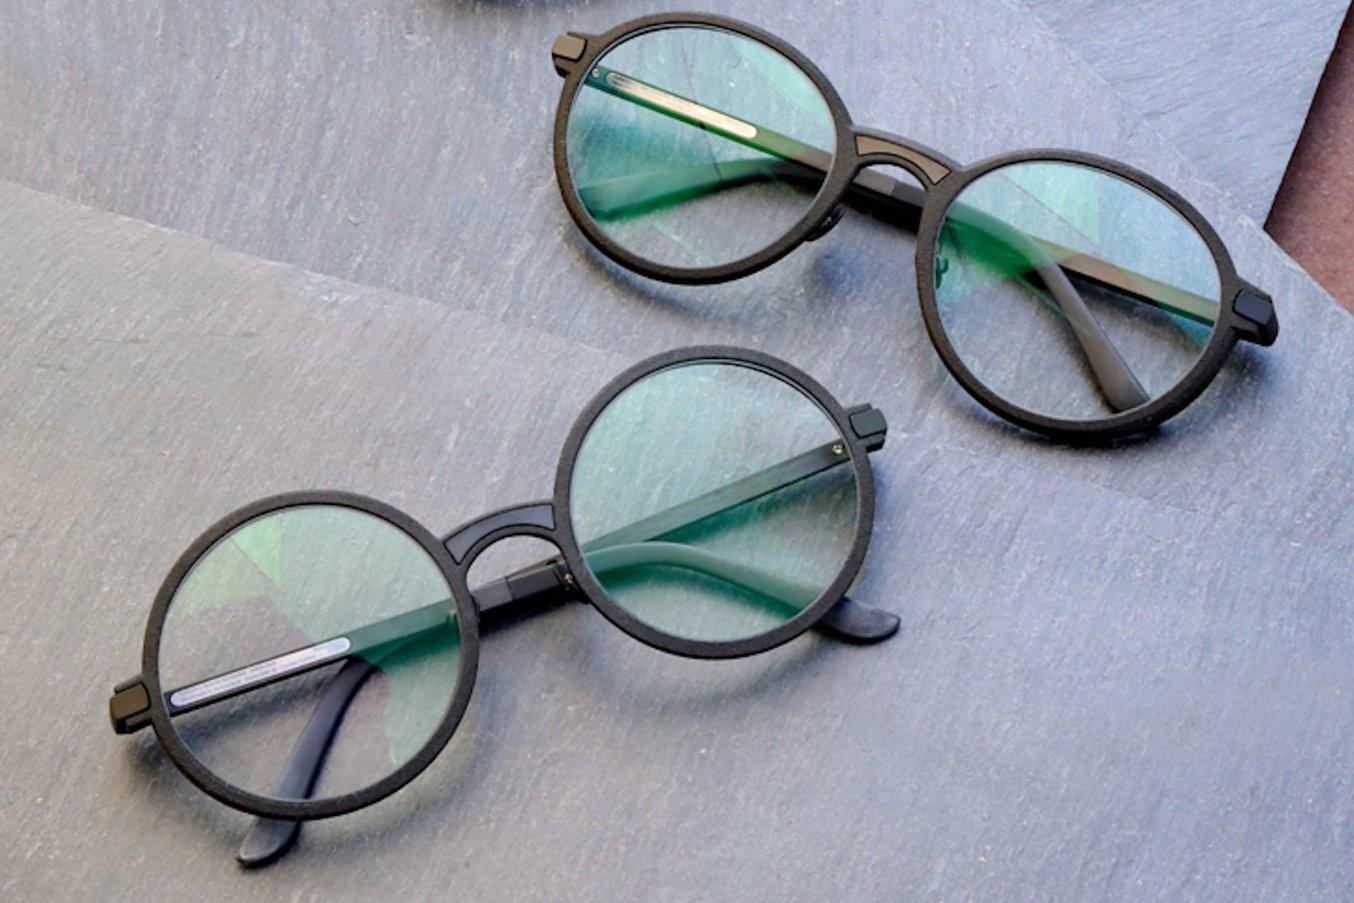 innovazione dei prodotti: occhiali realizzati con la stampa 3D